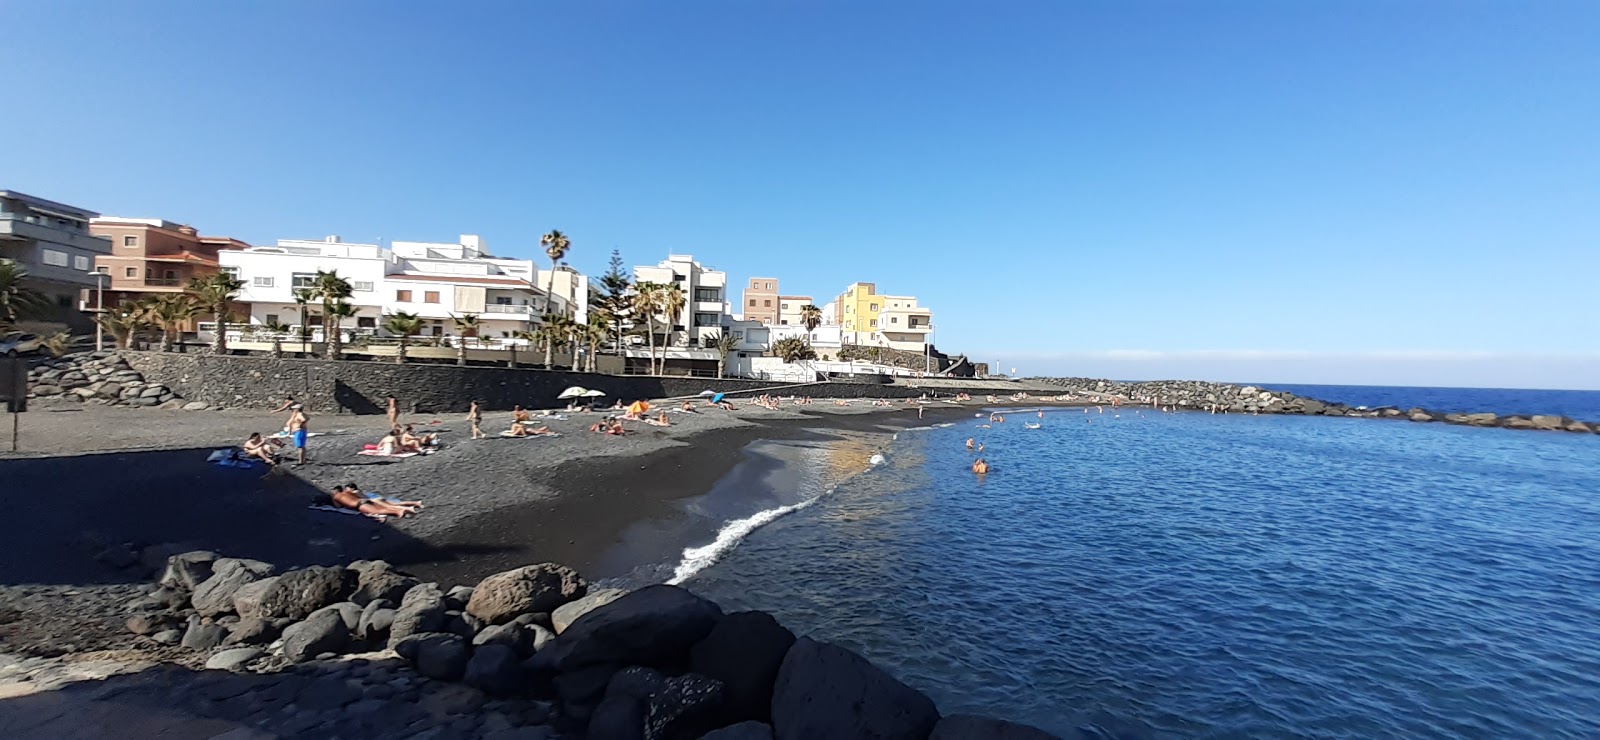 Photo of Playa de Las Eras with small bay